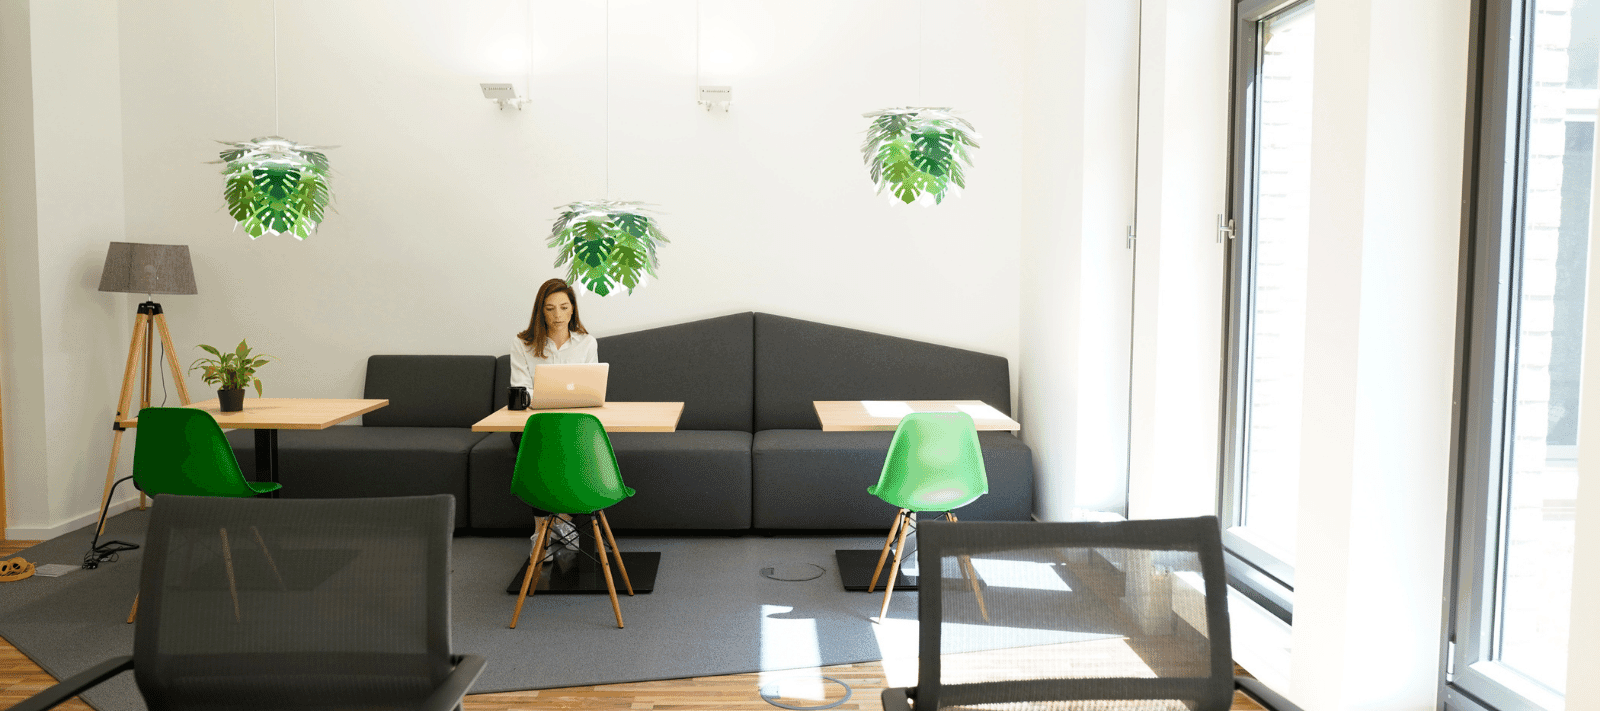 Startup-Essen – Work Inn Coworking Space in Essen wird um über 700 qm erweitert